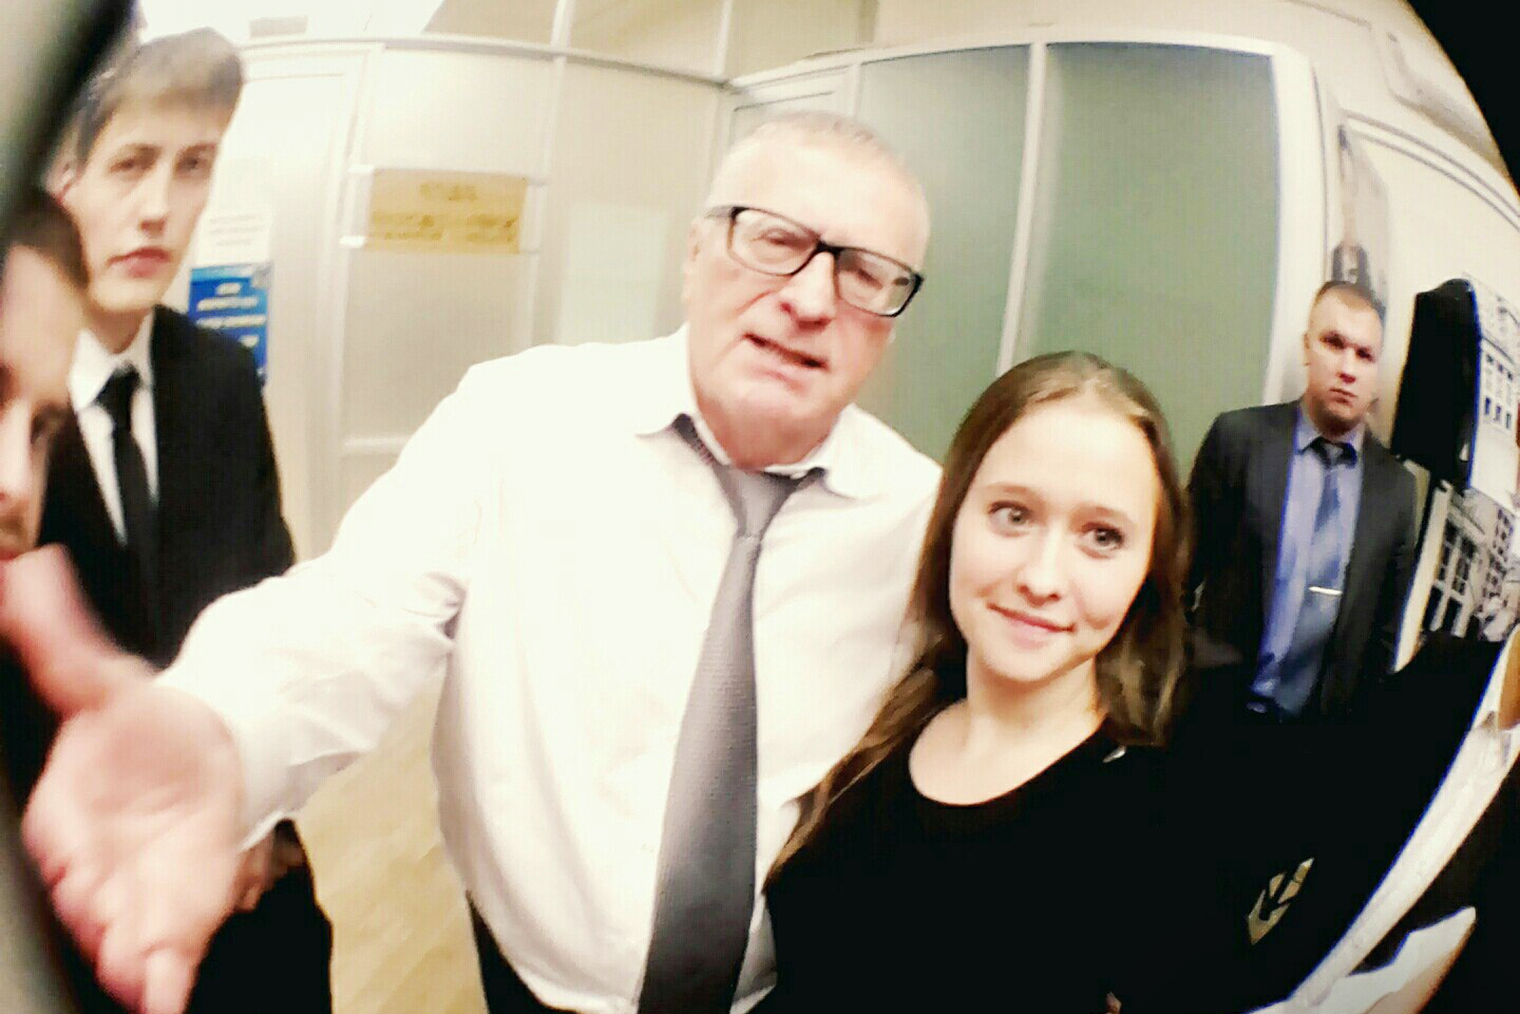 Однажды на мероприятии мне удалось сфотографироваться с Владимиром Жириновским. Кажется, это был один из его визитов в Государственную думу. Иногда у нас набирали добровольцев, и они посещали открытые заседания или какие⁠-⁠то лекции